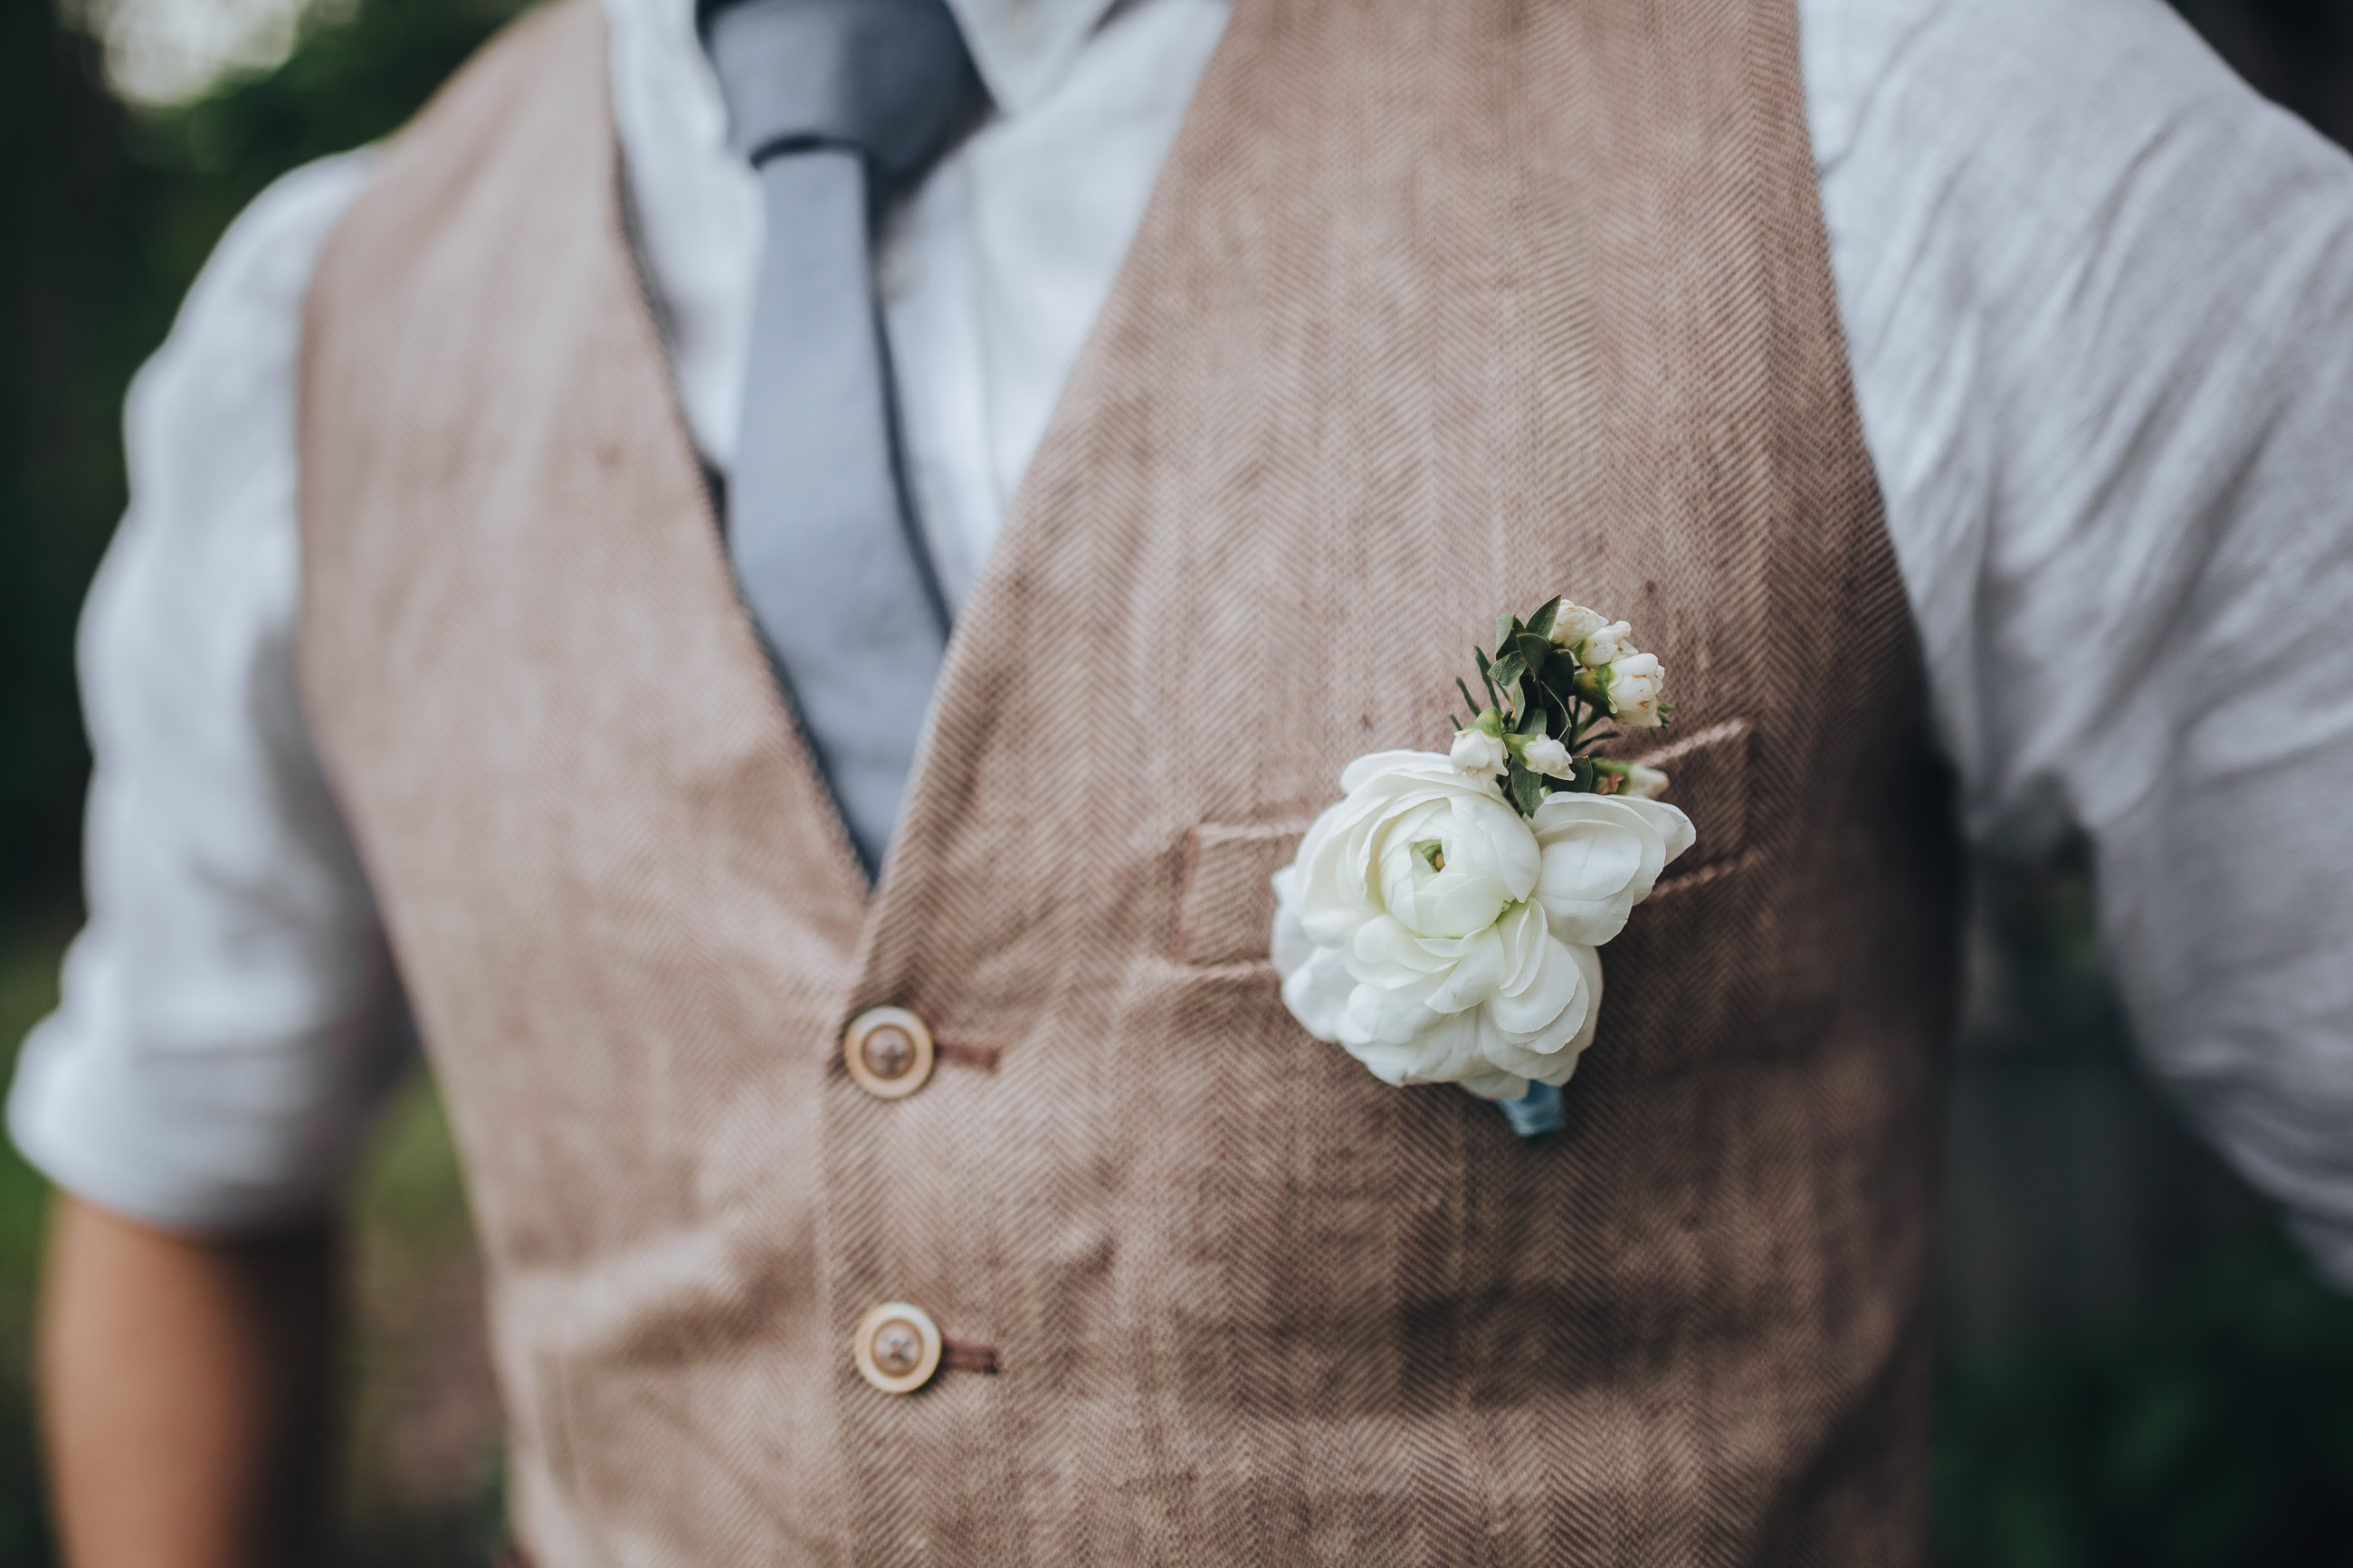 The groom | Source: Shutterstock